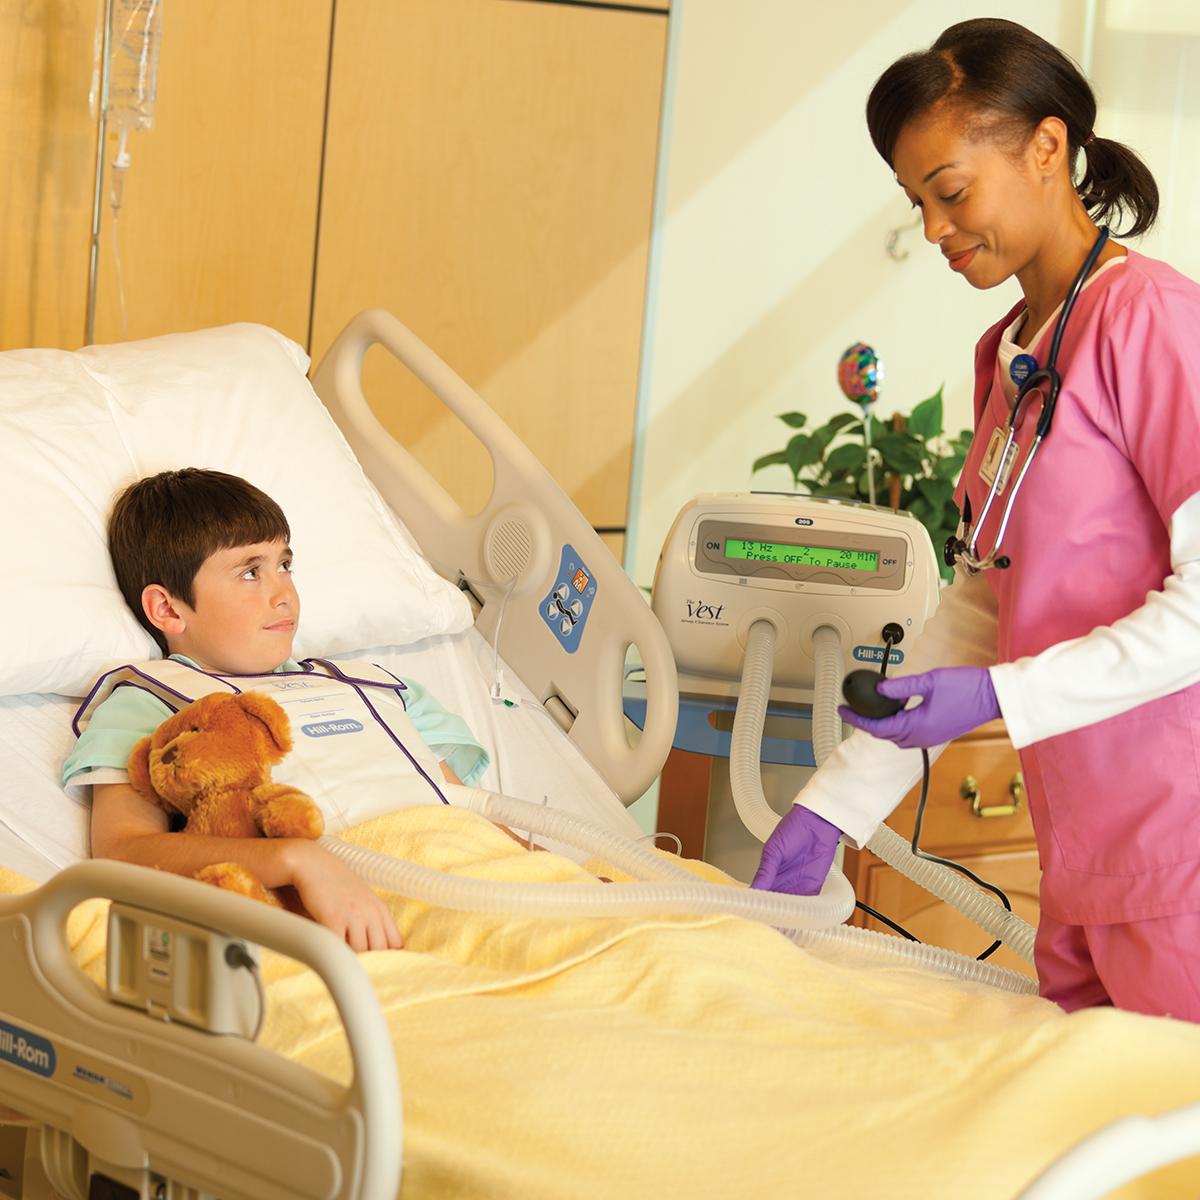 เด็กผู้ชายถือตุ๊กตาหมีอยู่บนเตียงของโรงพยาบาลขณะกำลังรับการรักษาจากระบบ Vest รุ่น 205